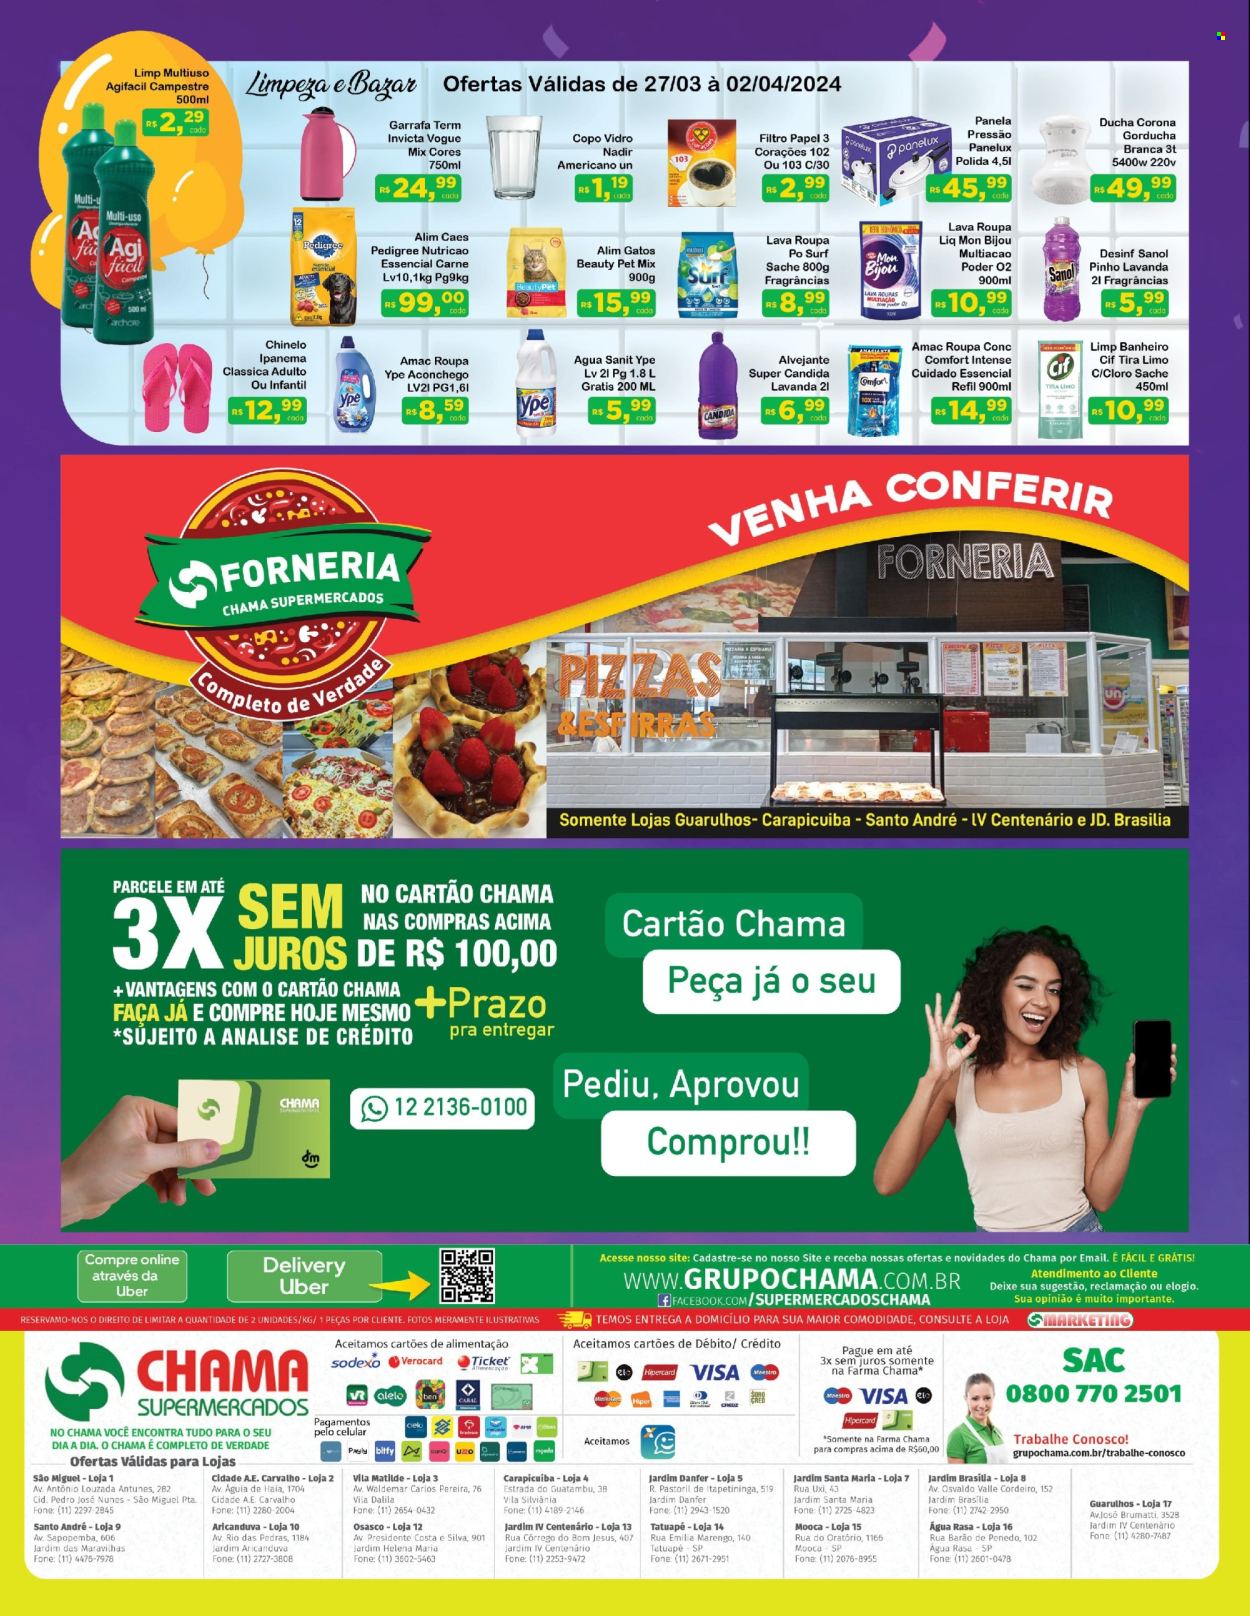 Encarte Chama Supermercados  - 27.03.2024 - 02.04.2024.